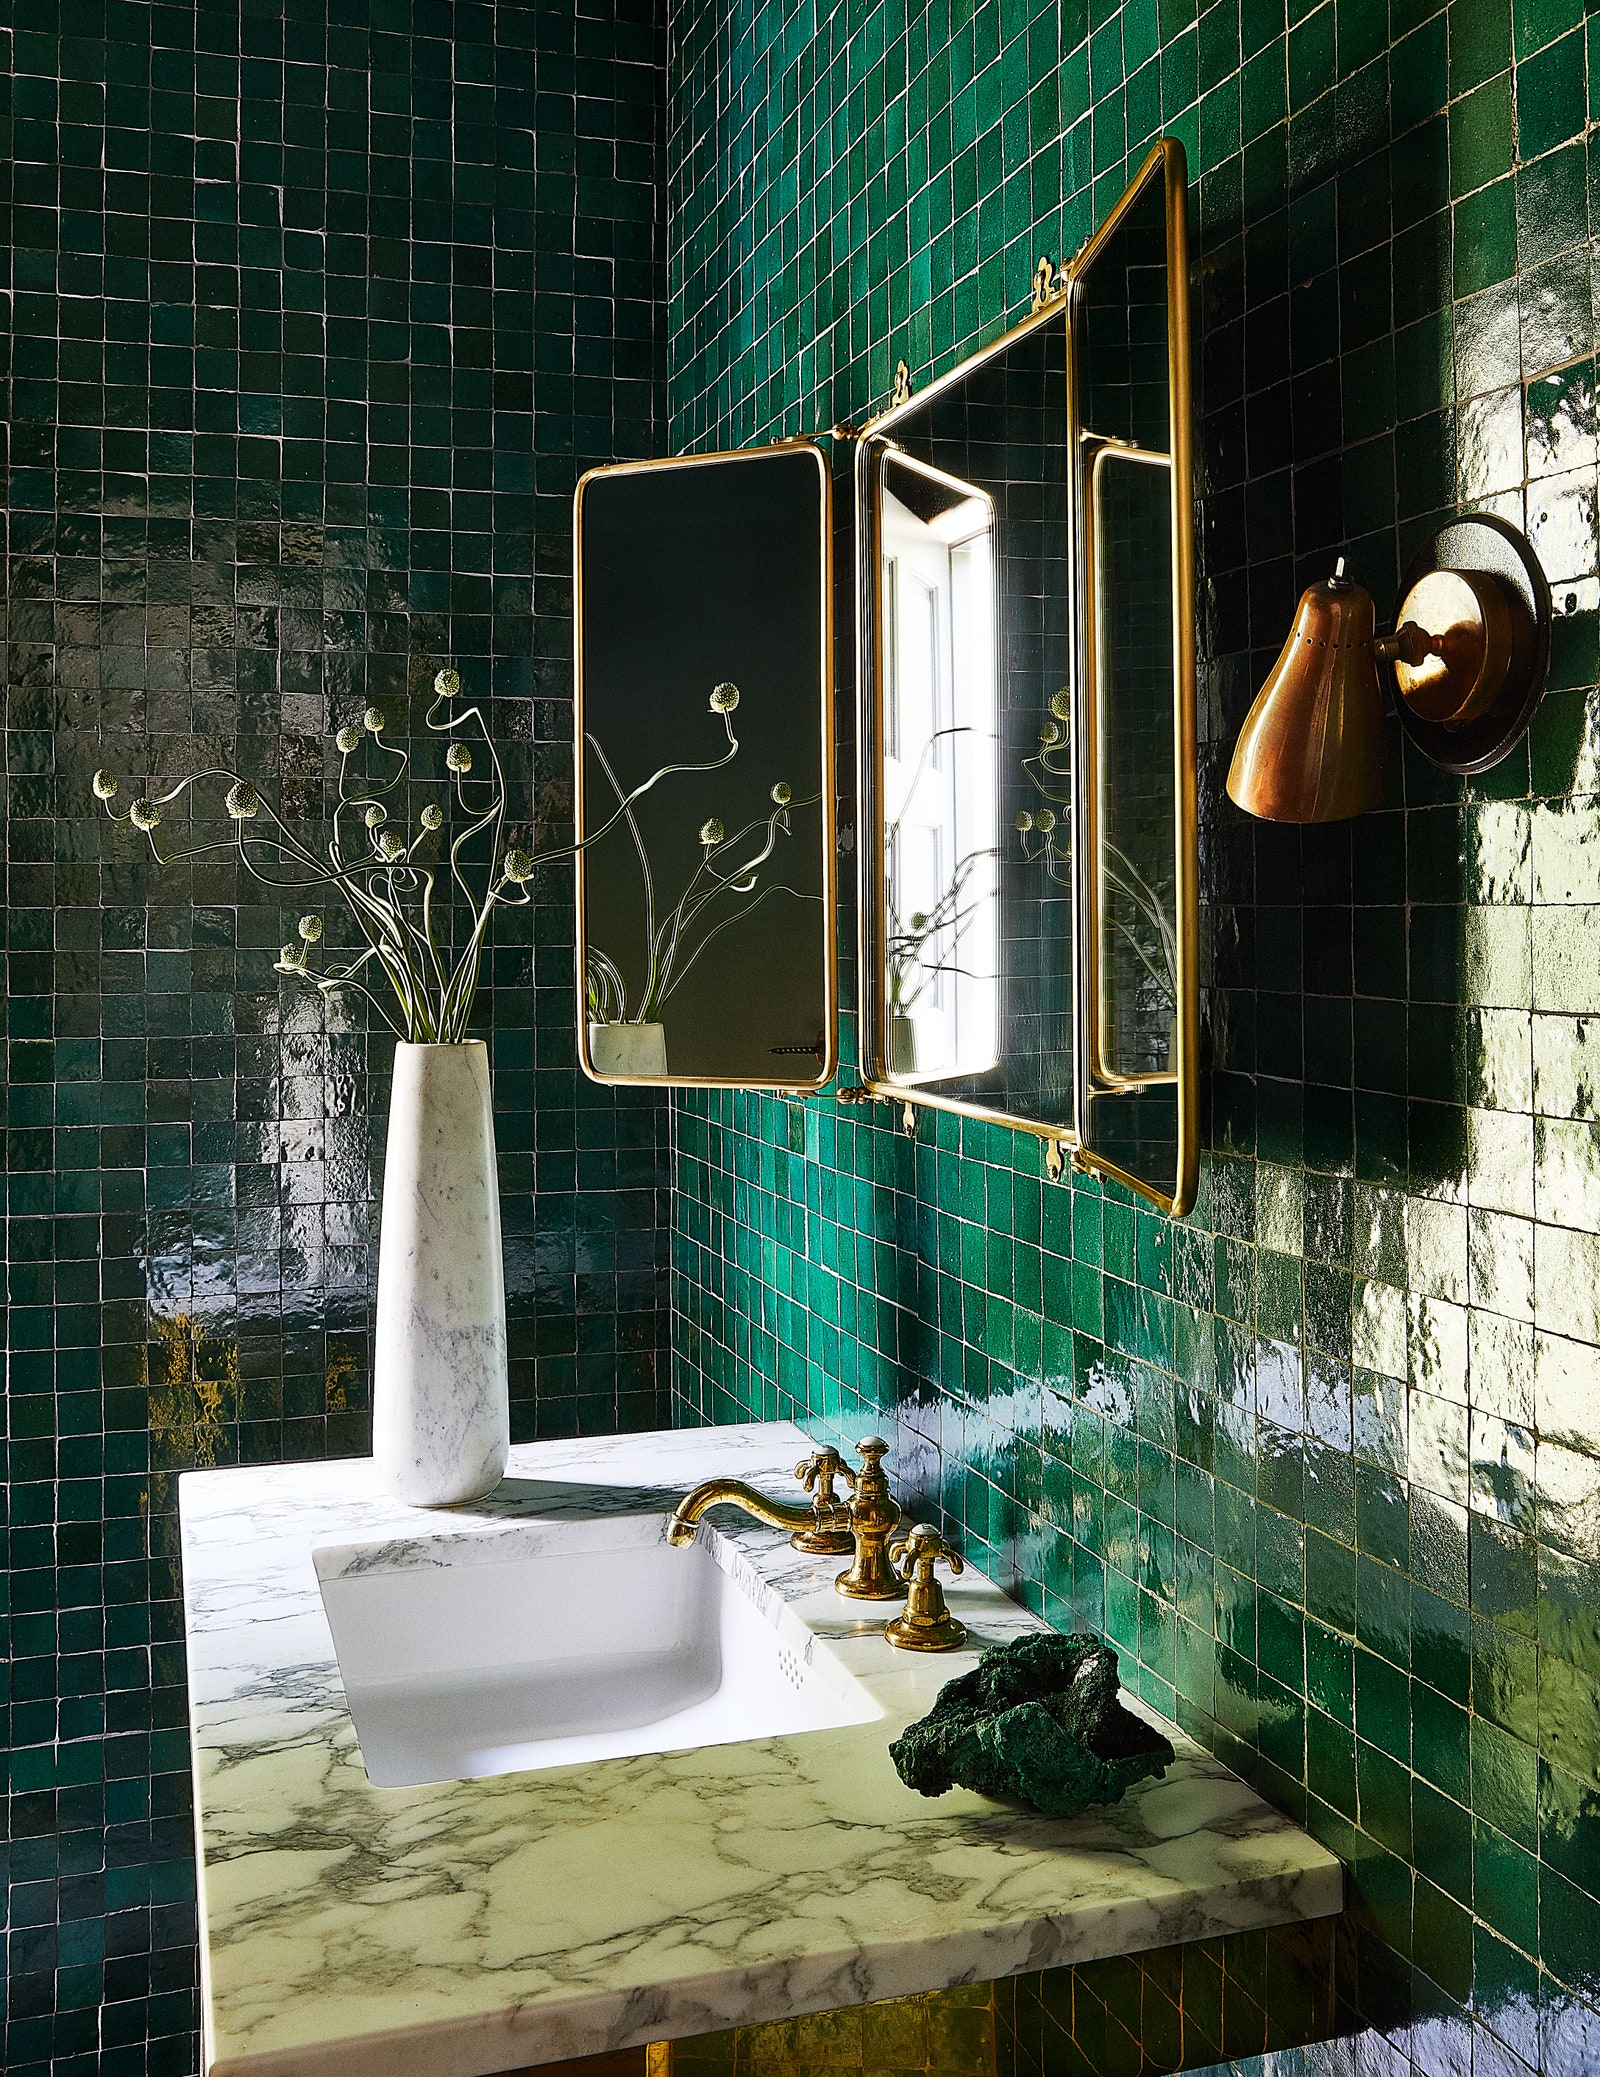 Bathroom Inspiration - Inside The Best Celebrity Homes